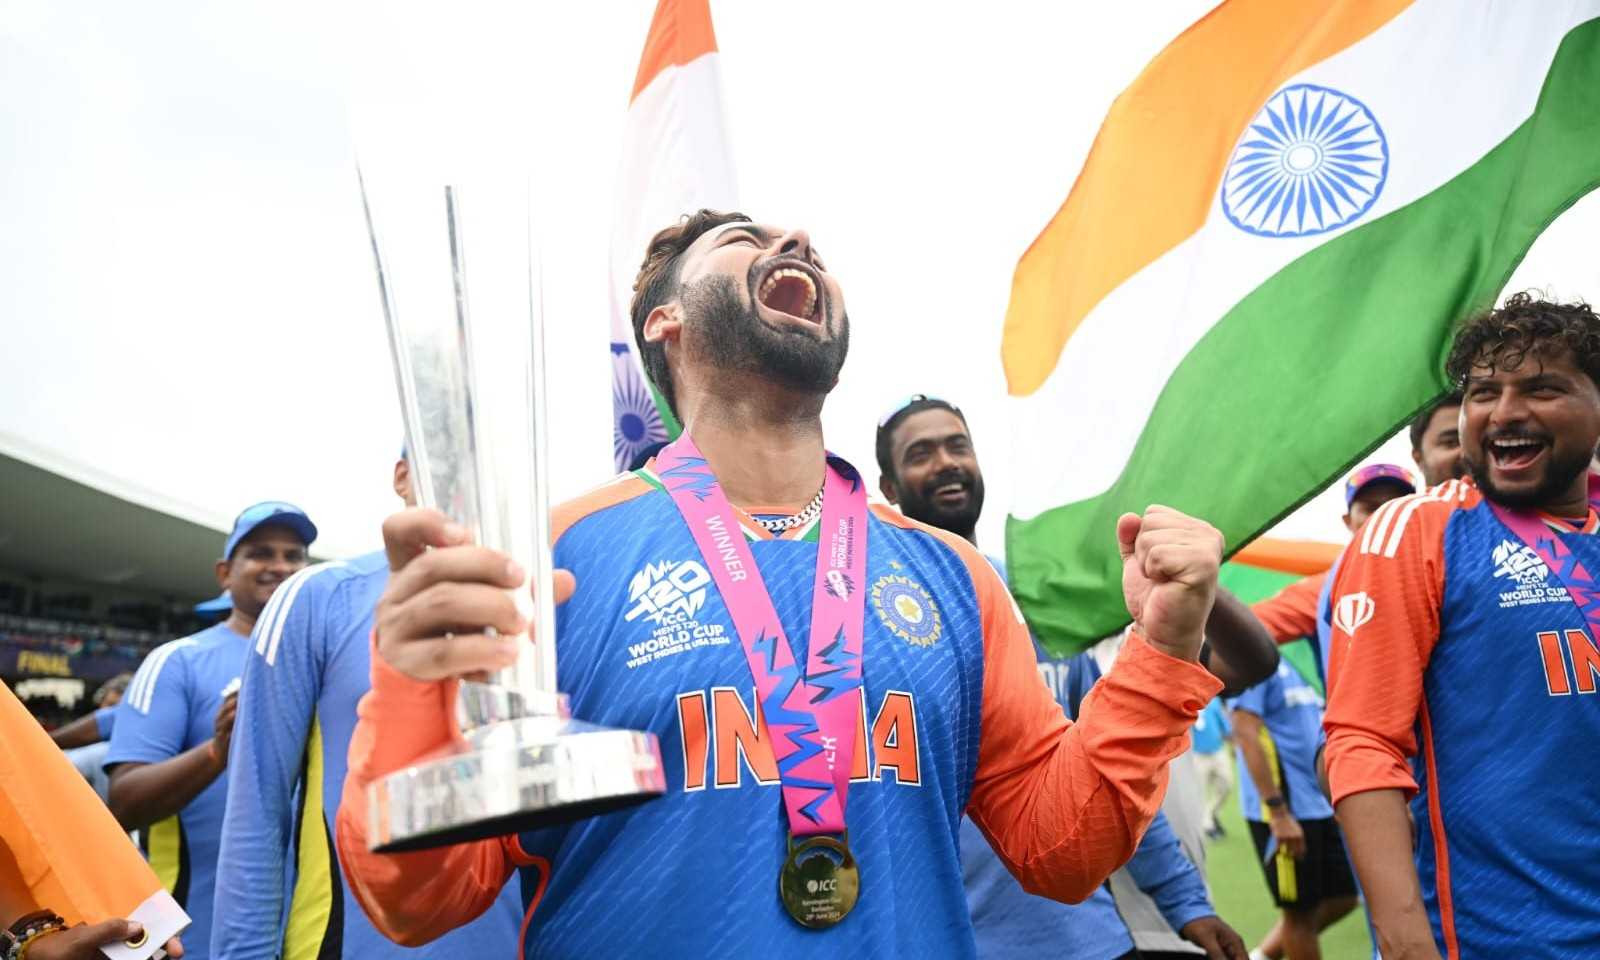 ભારતે વર્લ્ડ કપમાં જબરી જીત મેળવતાં જસદણમાં હજારો ક્રિકેટ પ્રેમીઓ આનંદથી ઝૂમી ઉઠ્યા